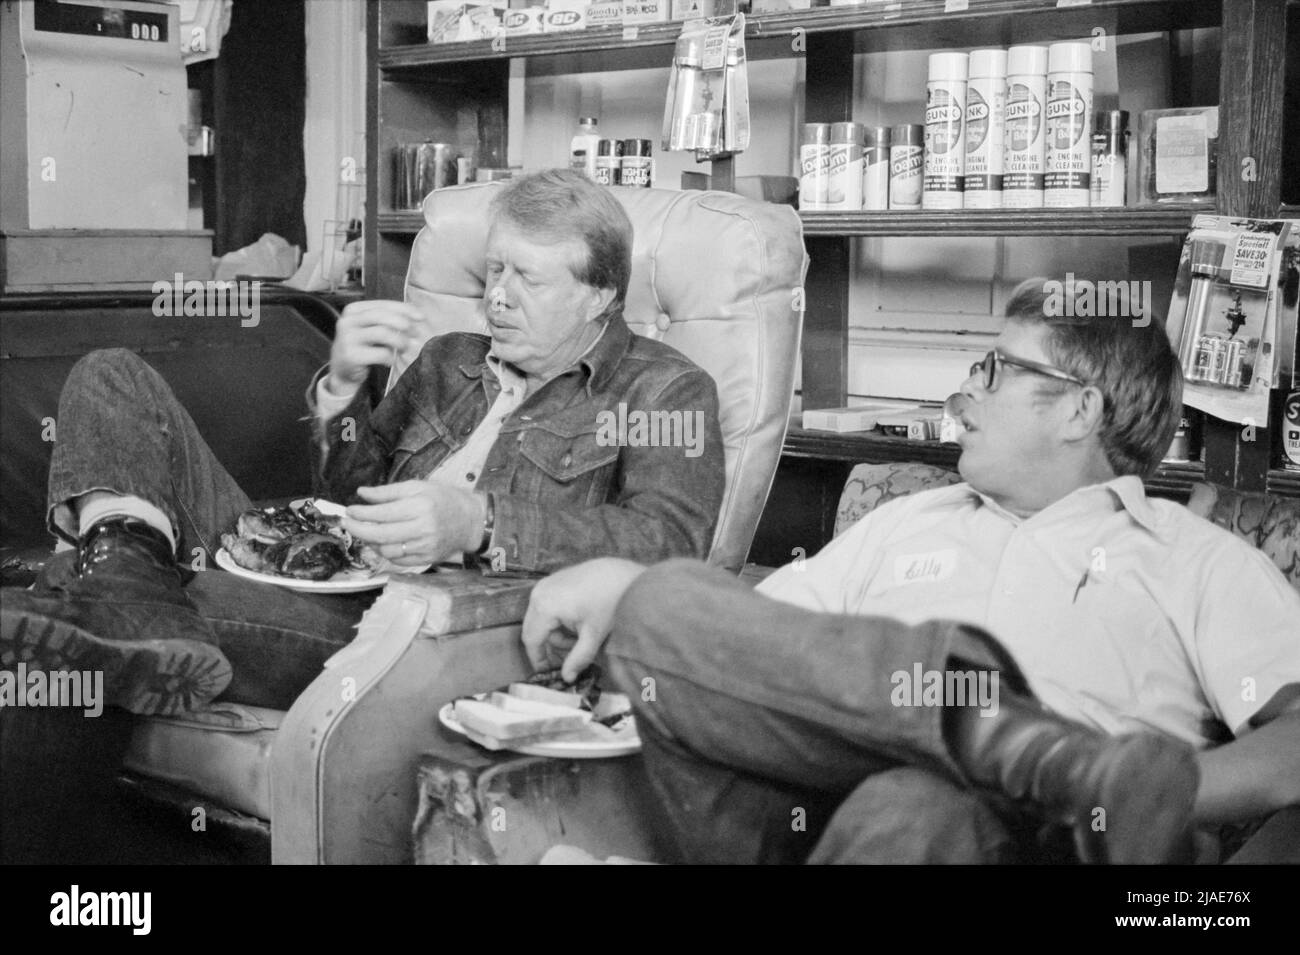 Jimmy carter mangeant avec son frère, Billy carter, lors d'un arrêt de campagne à la station-service de son Billy, dans leur ville natale de Plains, en Géorgie, le 10 septembre 1976. (ÉTATS-UNIS) Banque D'Images